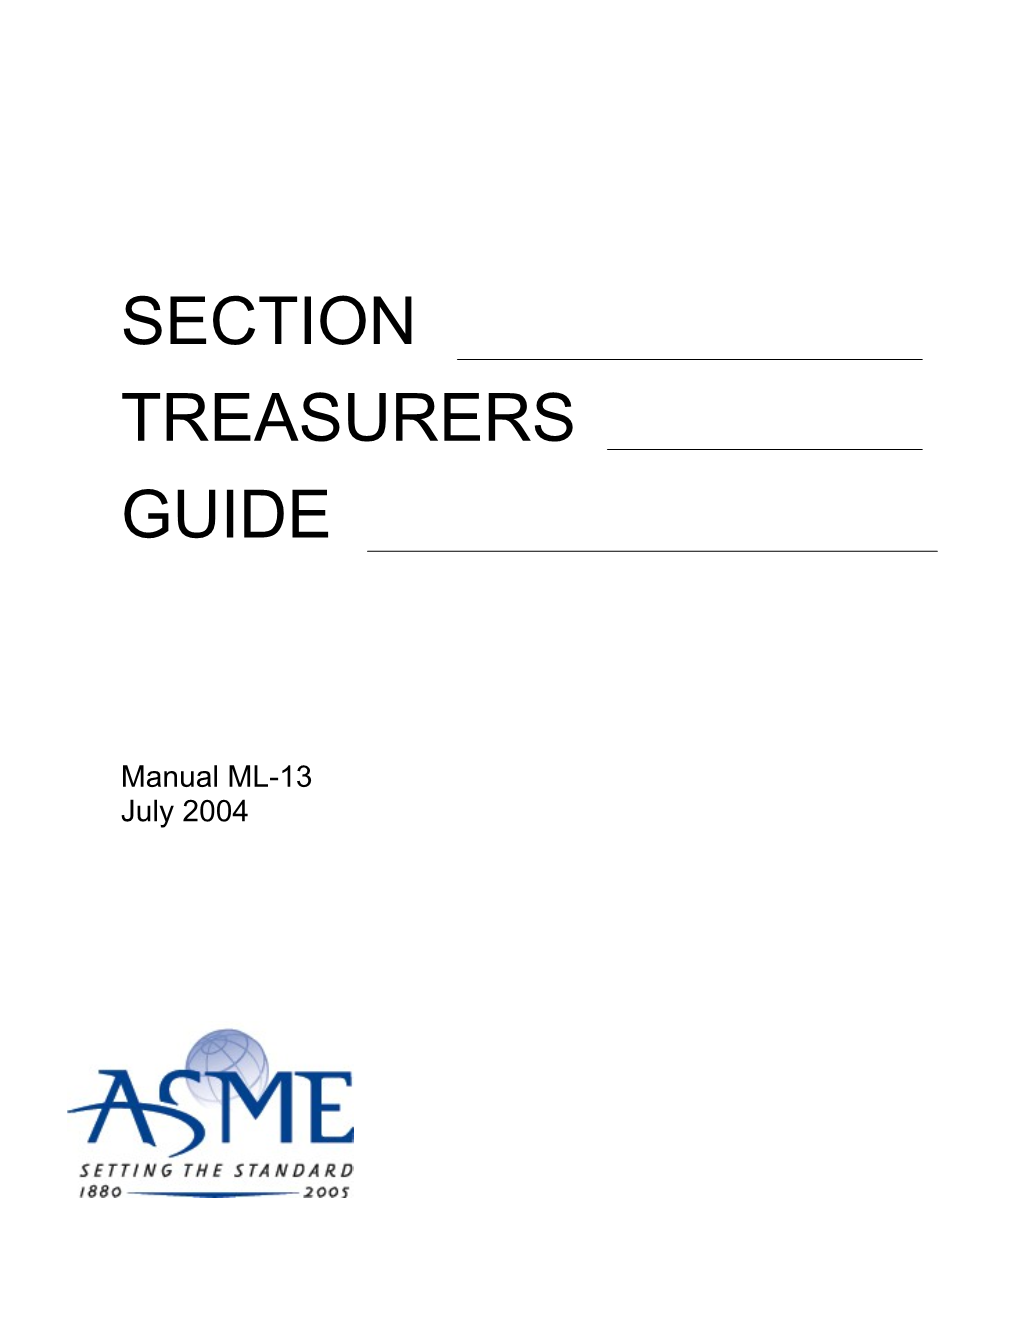 Section Treasurer's Guide